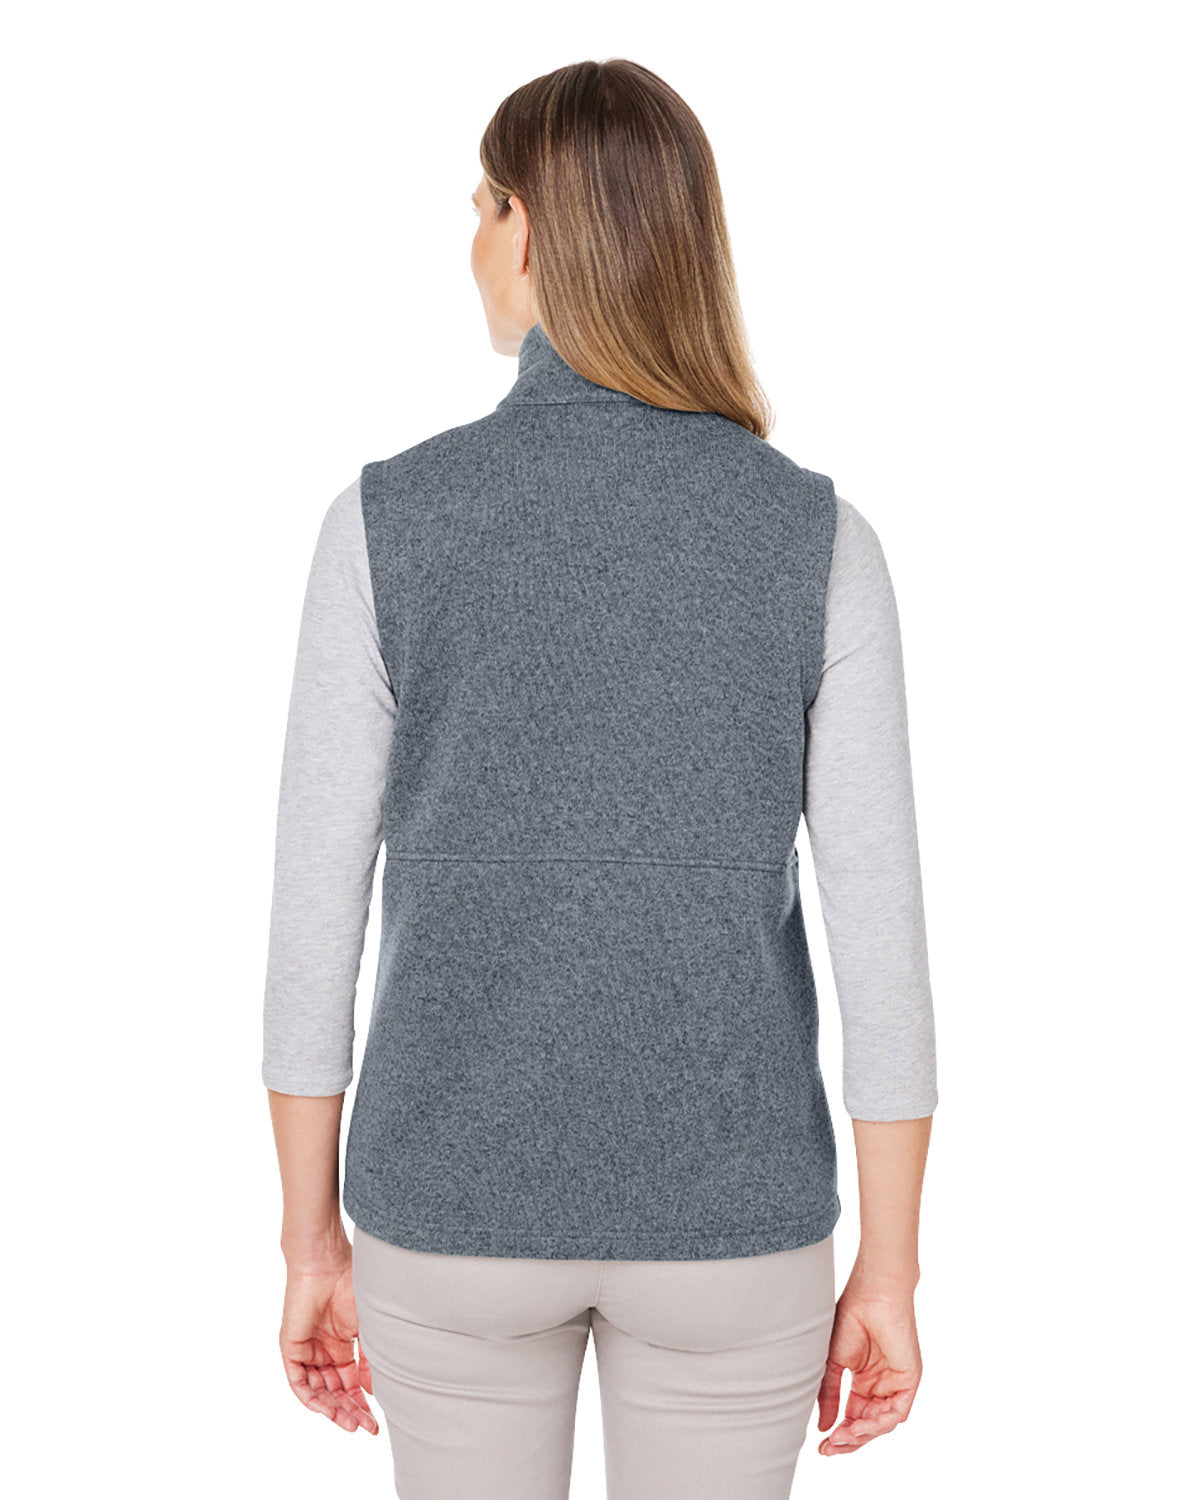 Marmot Ladies Dropline Sweater Fleece Vests, Steel Onyx